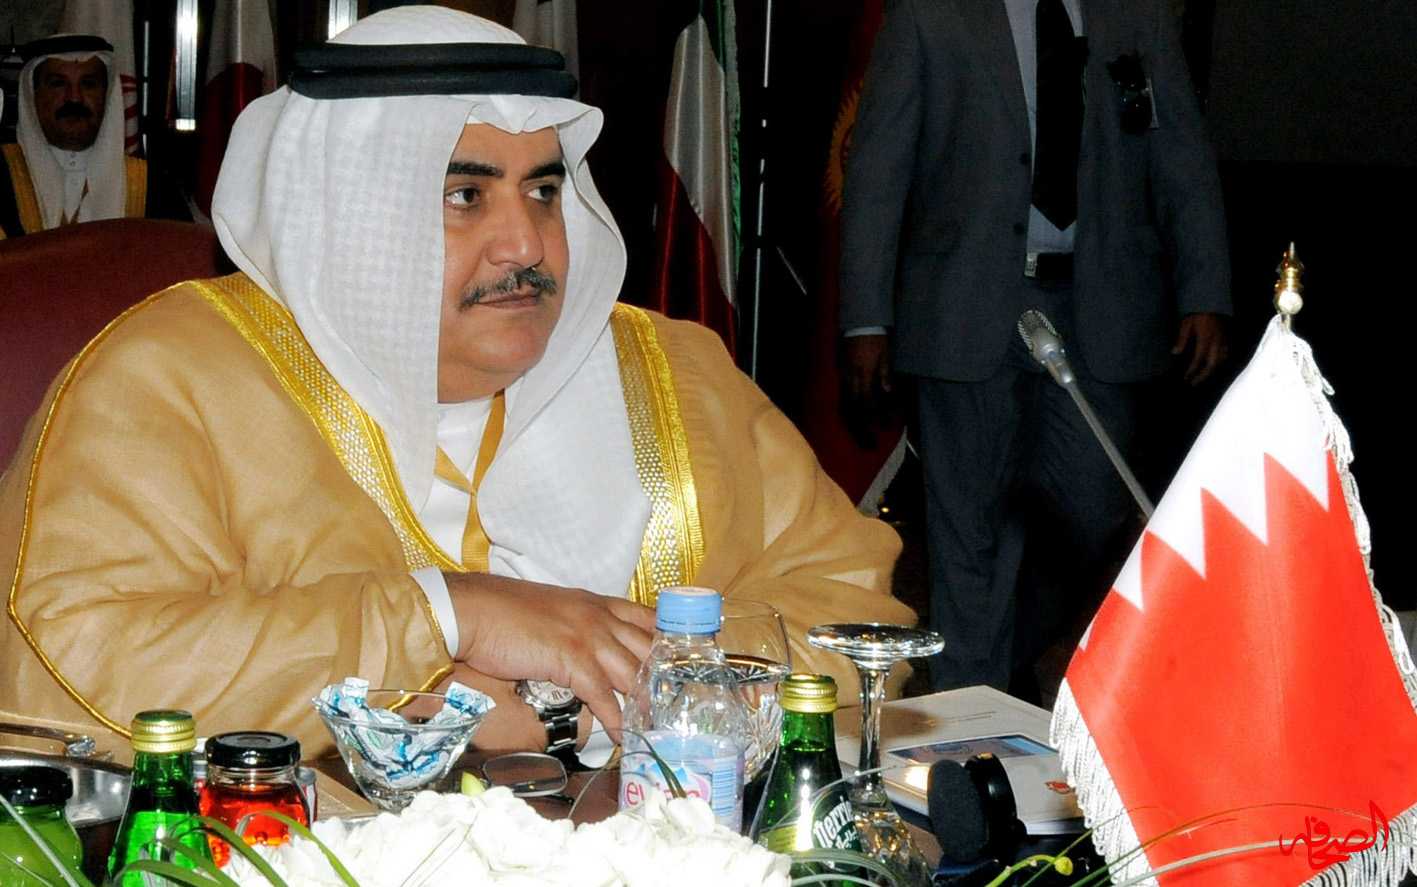 وزير الخارجية البحريني يشن هجوما عنيفا على السيد نصرالله